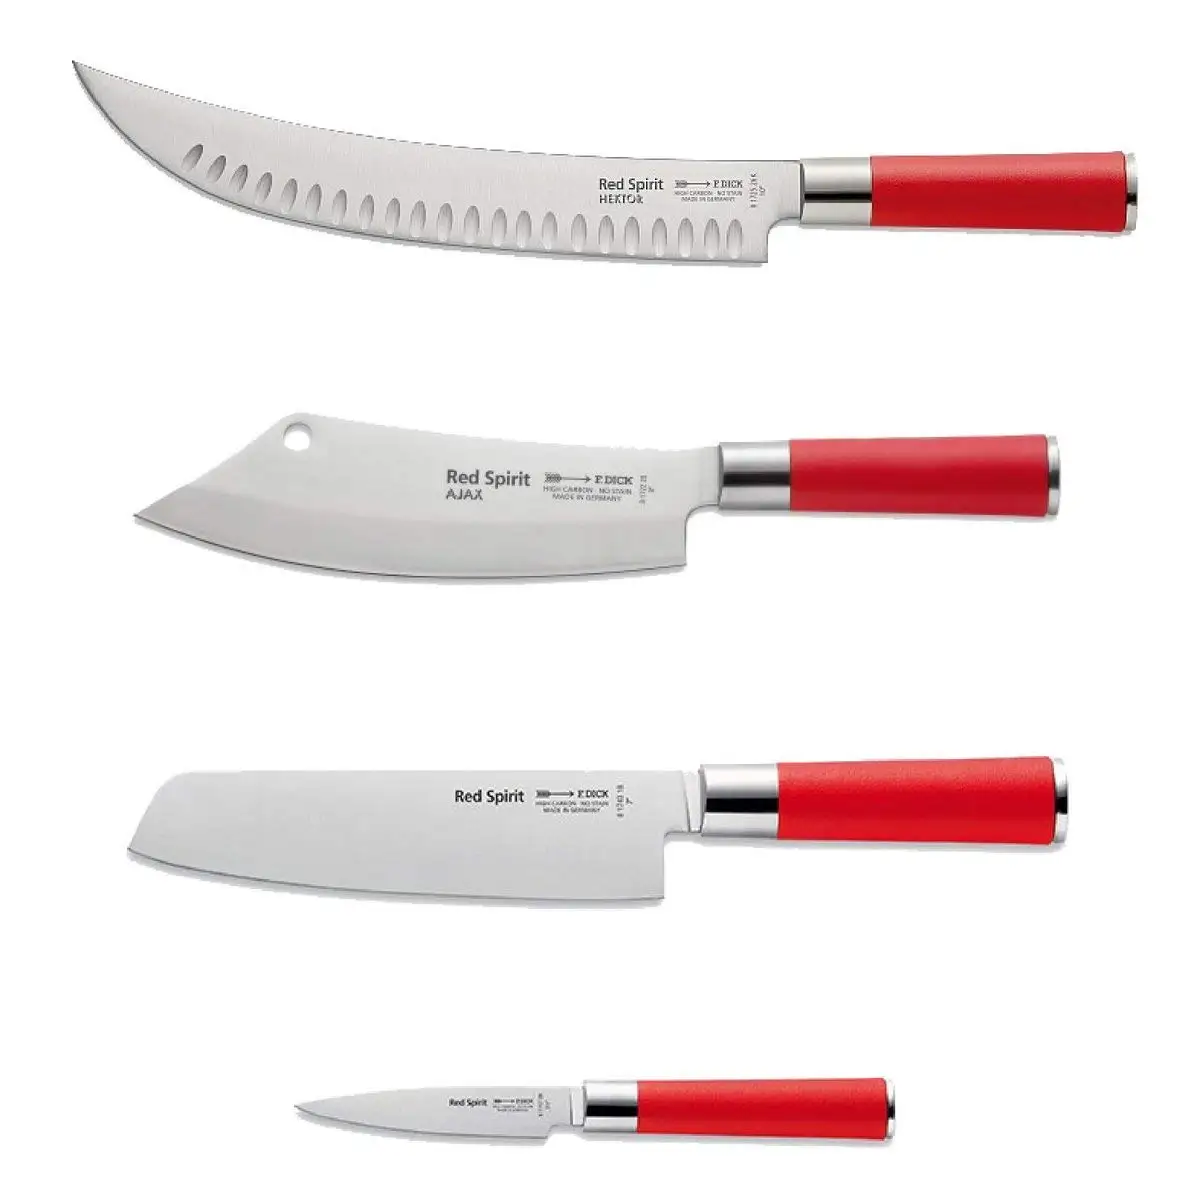 Knife sets ergogrip